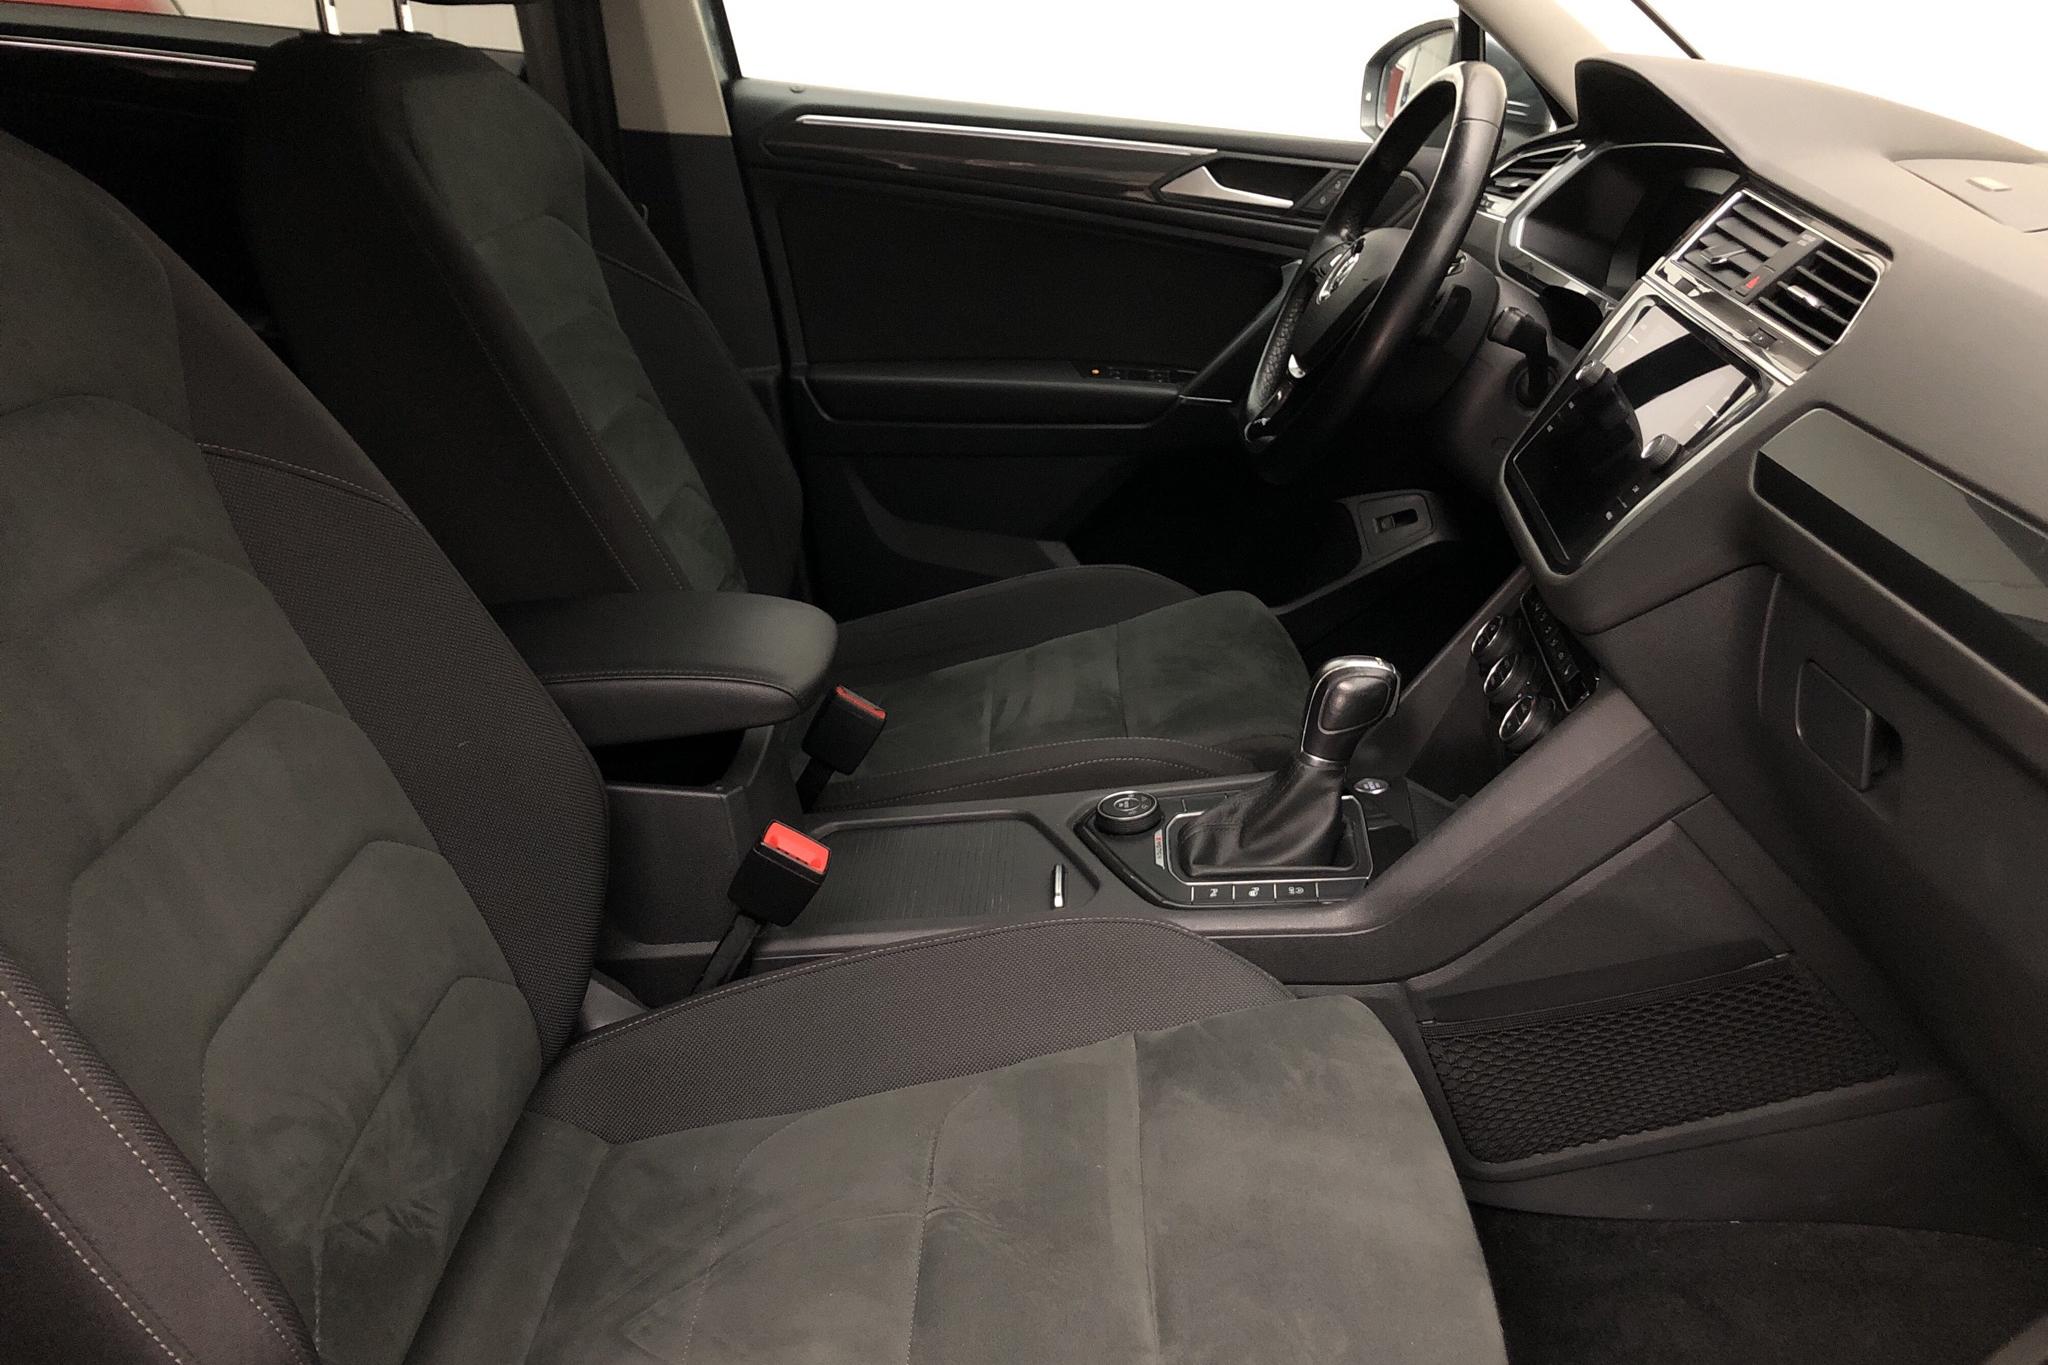 VW Tiguan Allspace 2.0 TDI 4MOTION (190hk) - 149 430 km - Automatic - gray - 2019